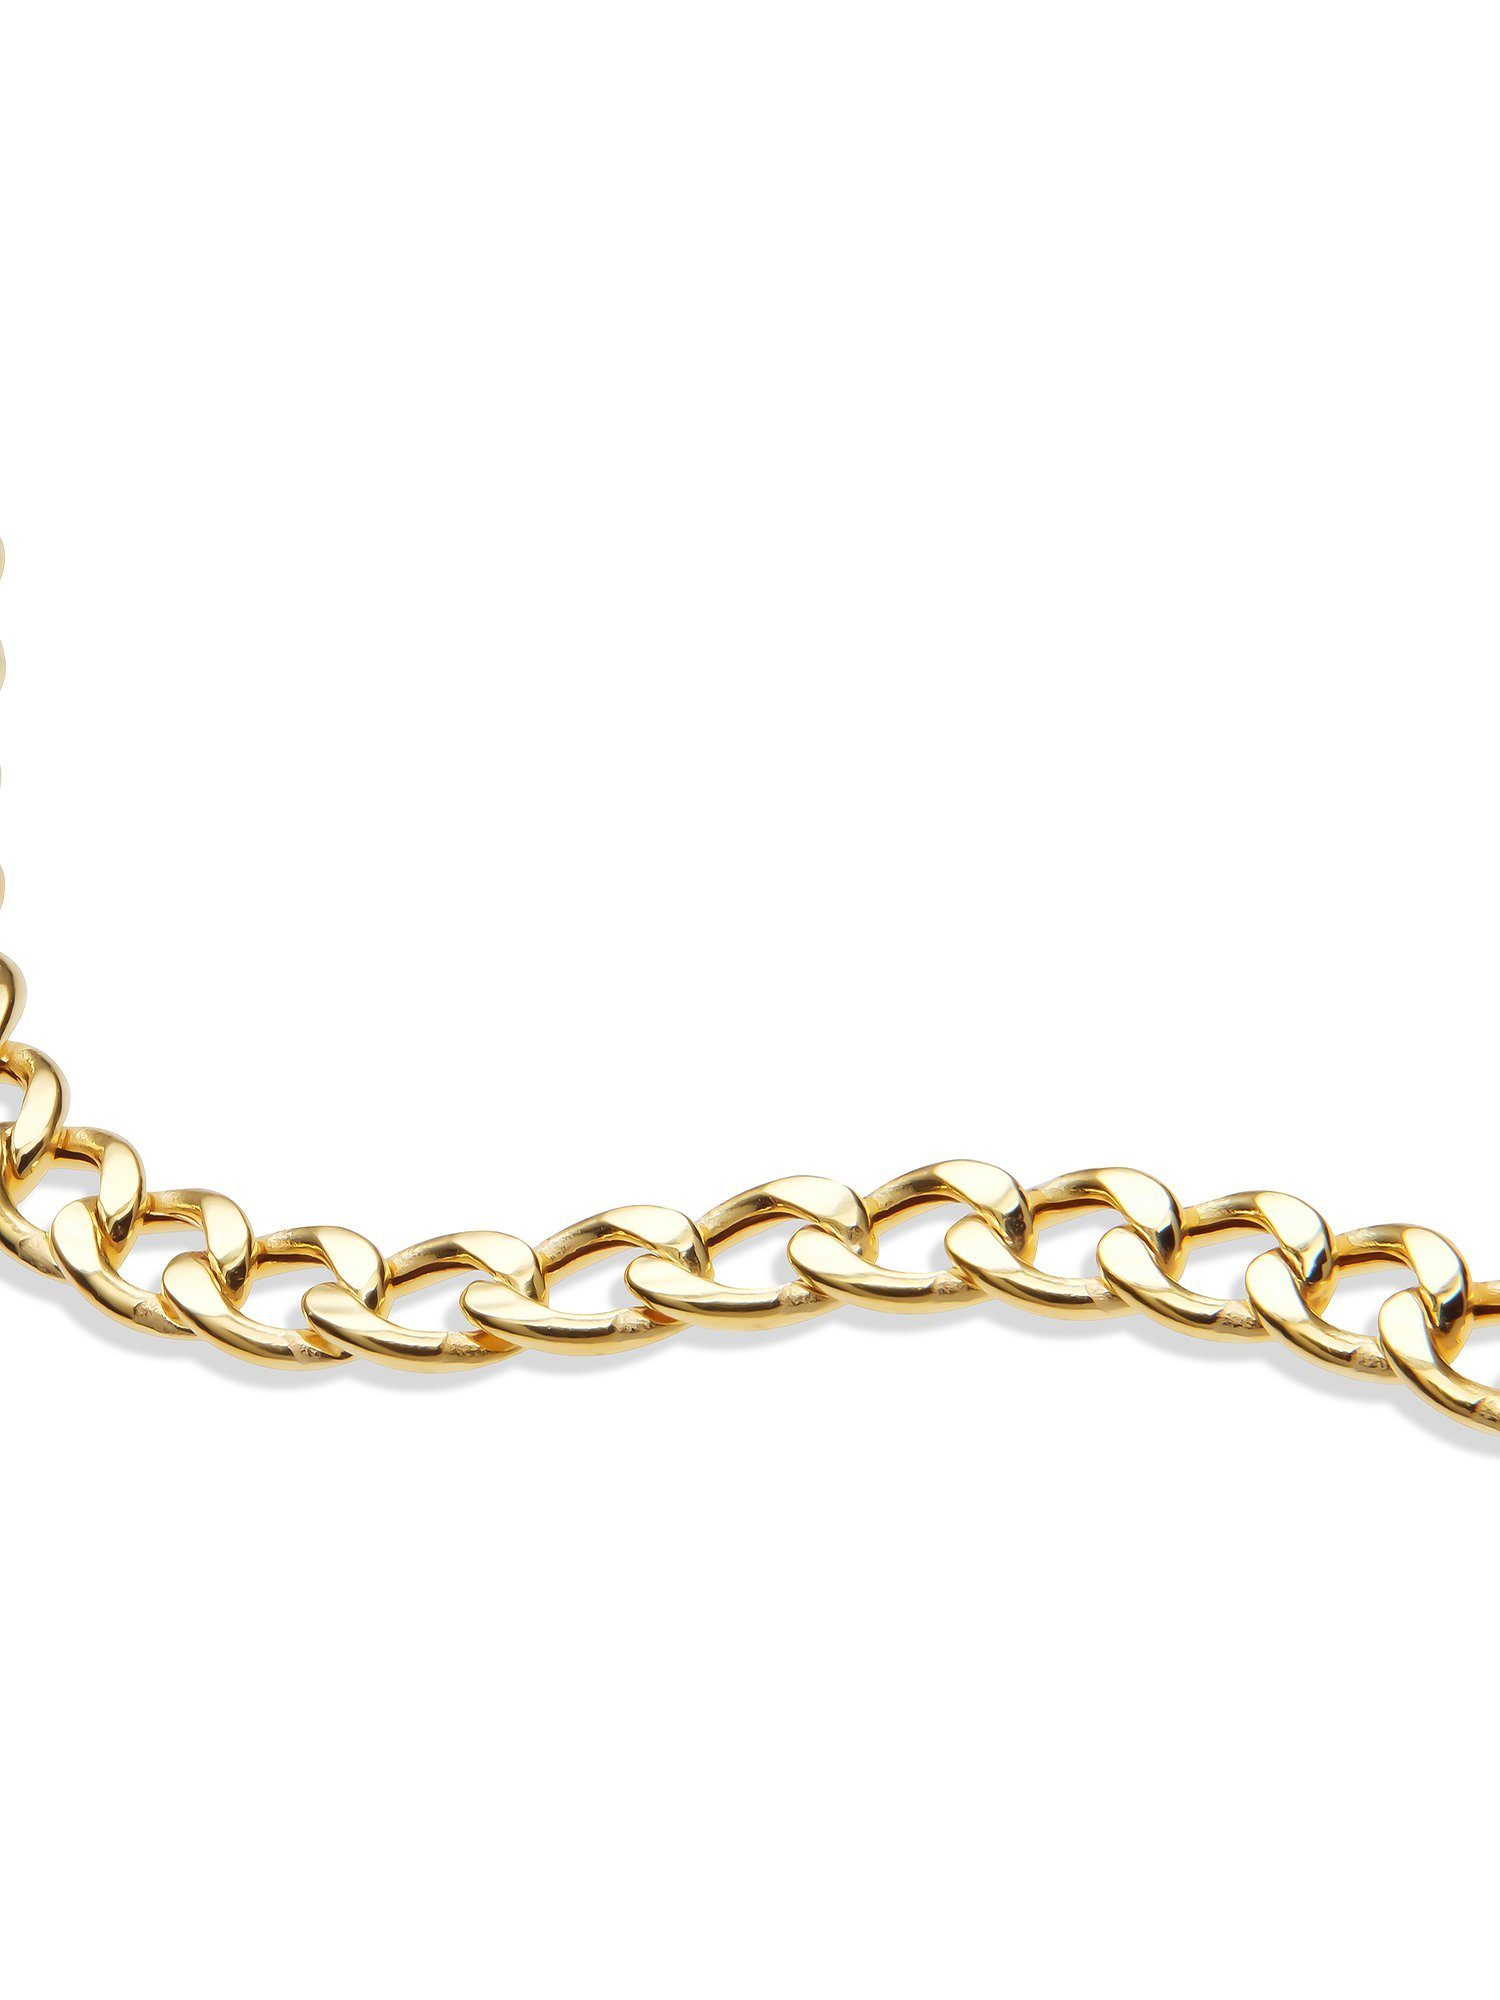 Damen-Armband Silberarmband Gelbgold FAVS 375er FAVS